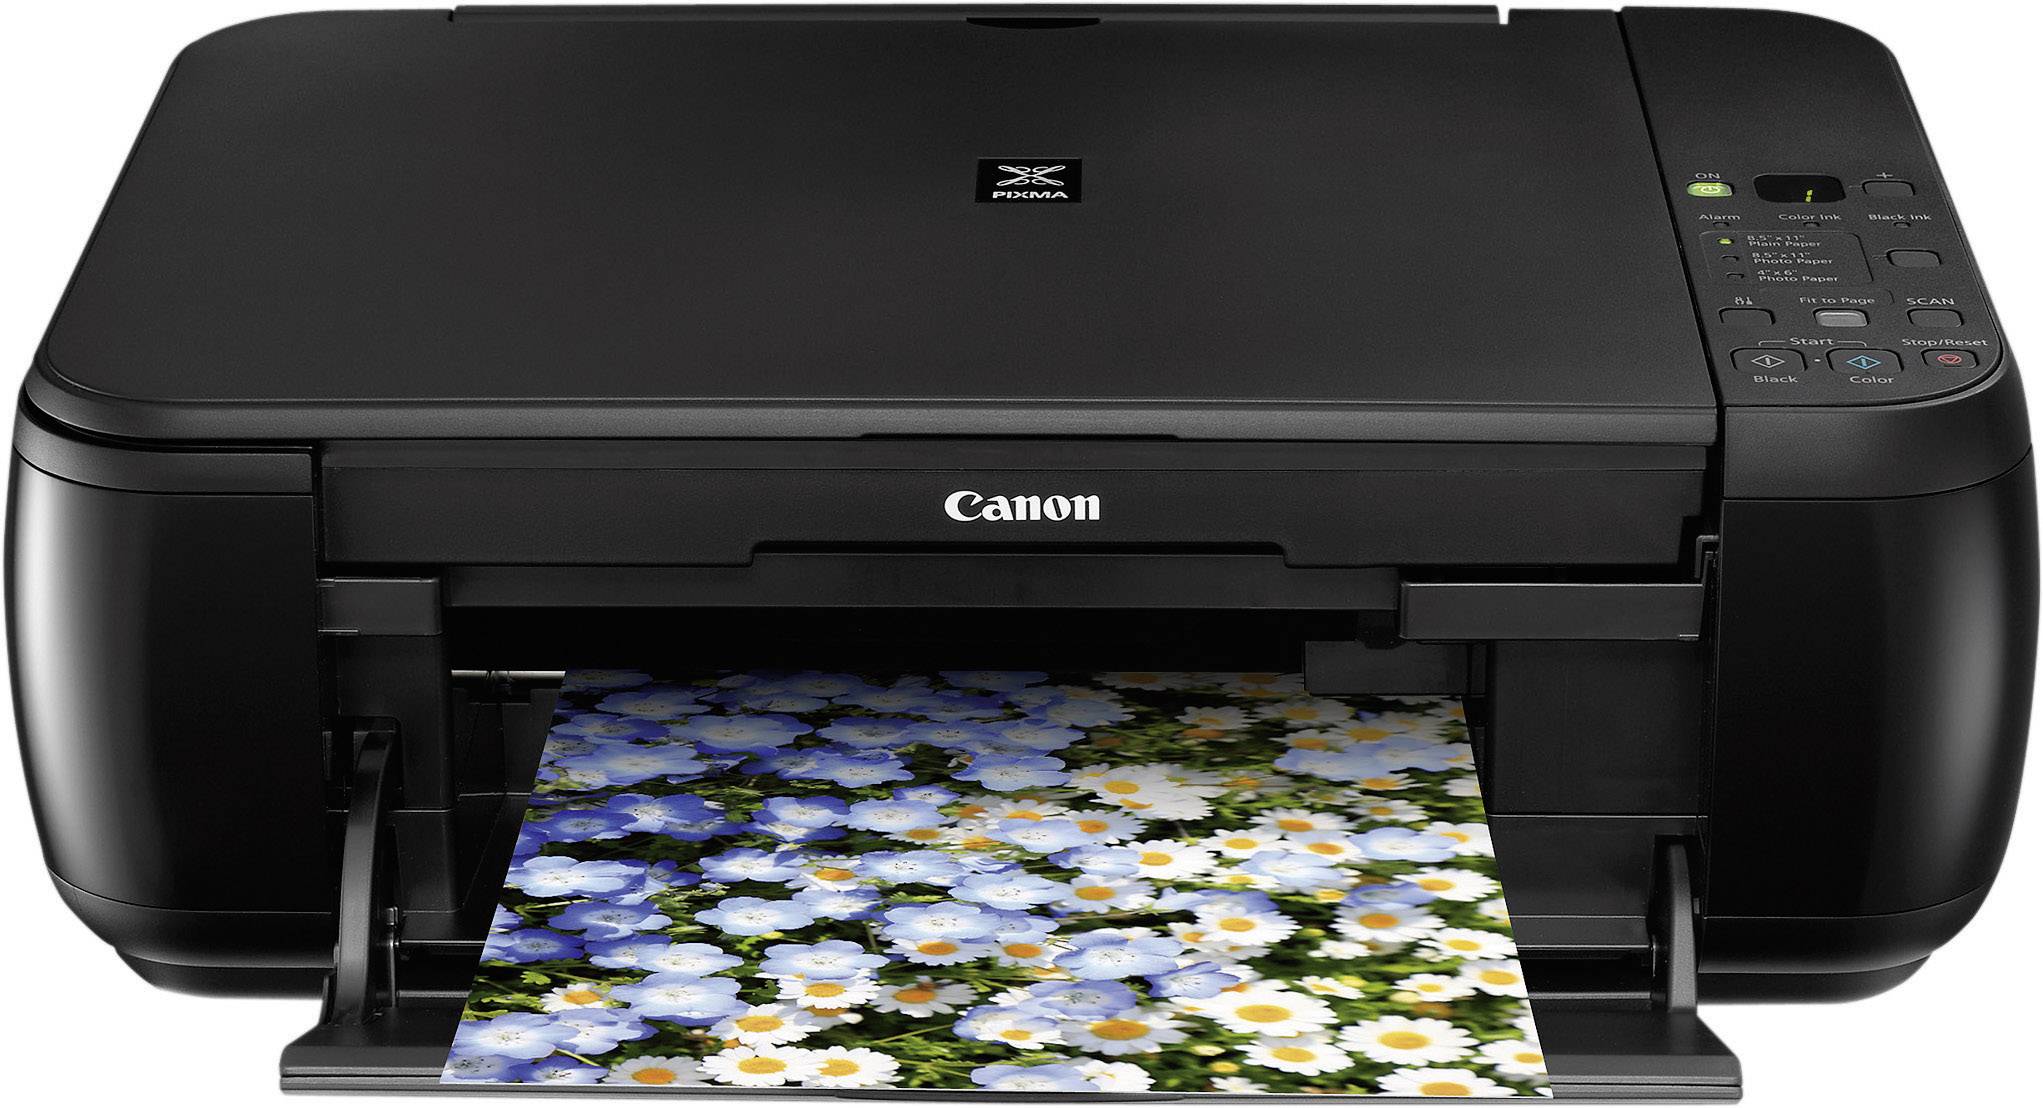 canon pixma mp280 printer driver